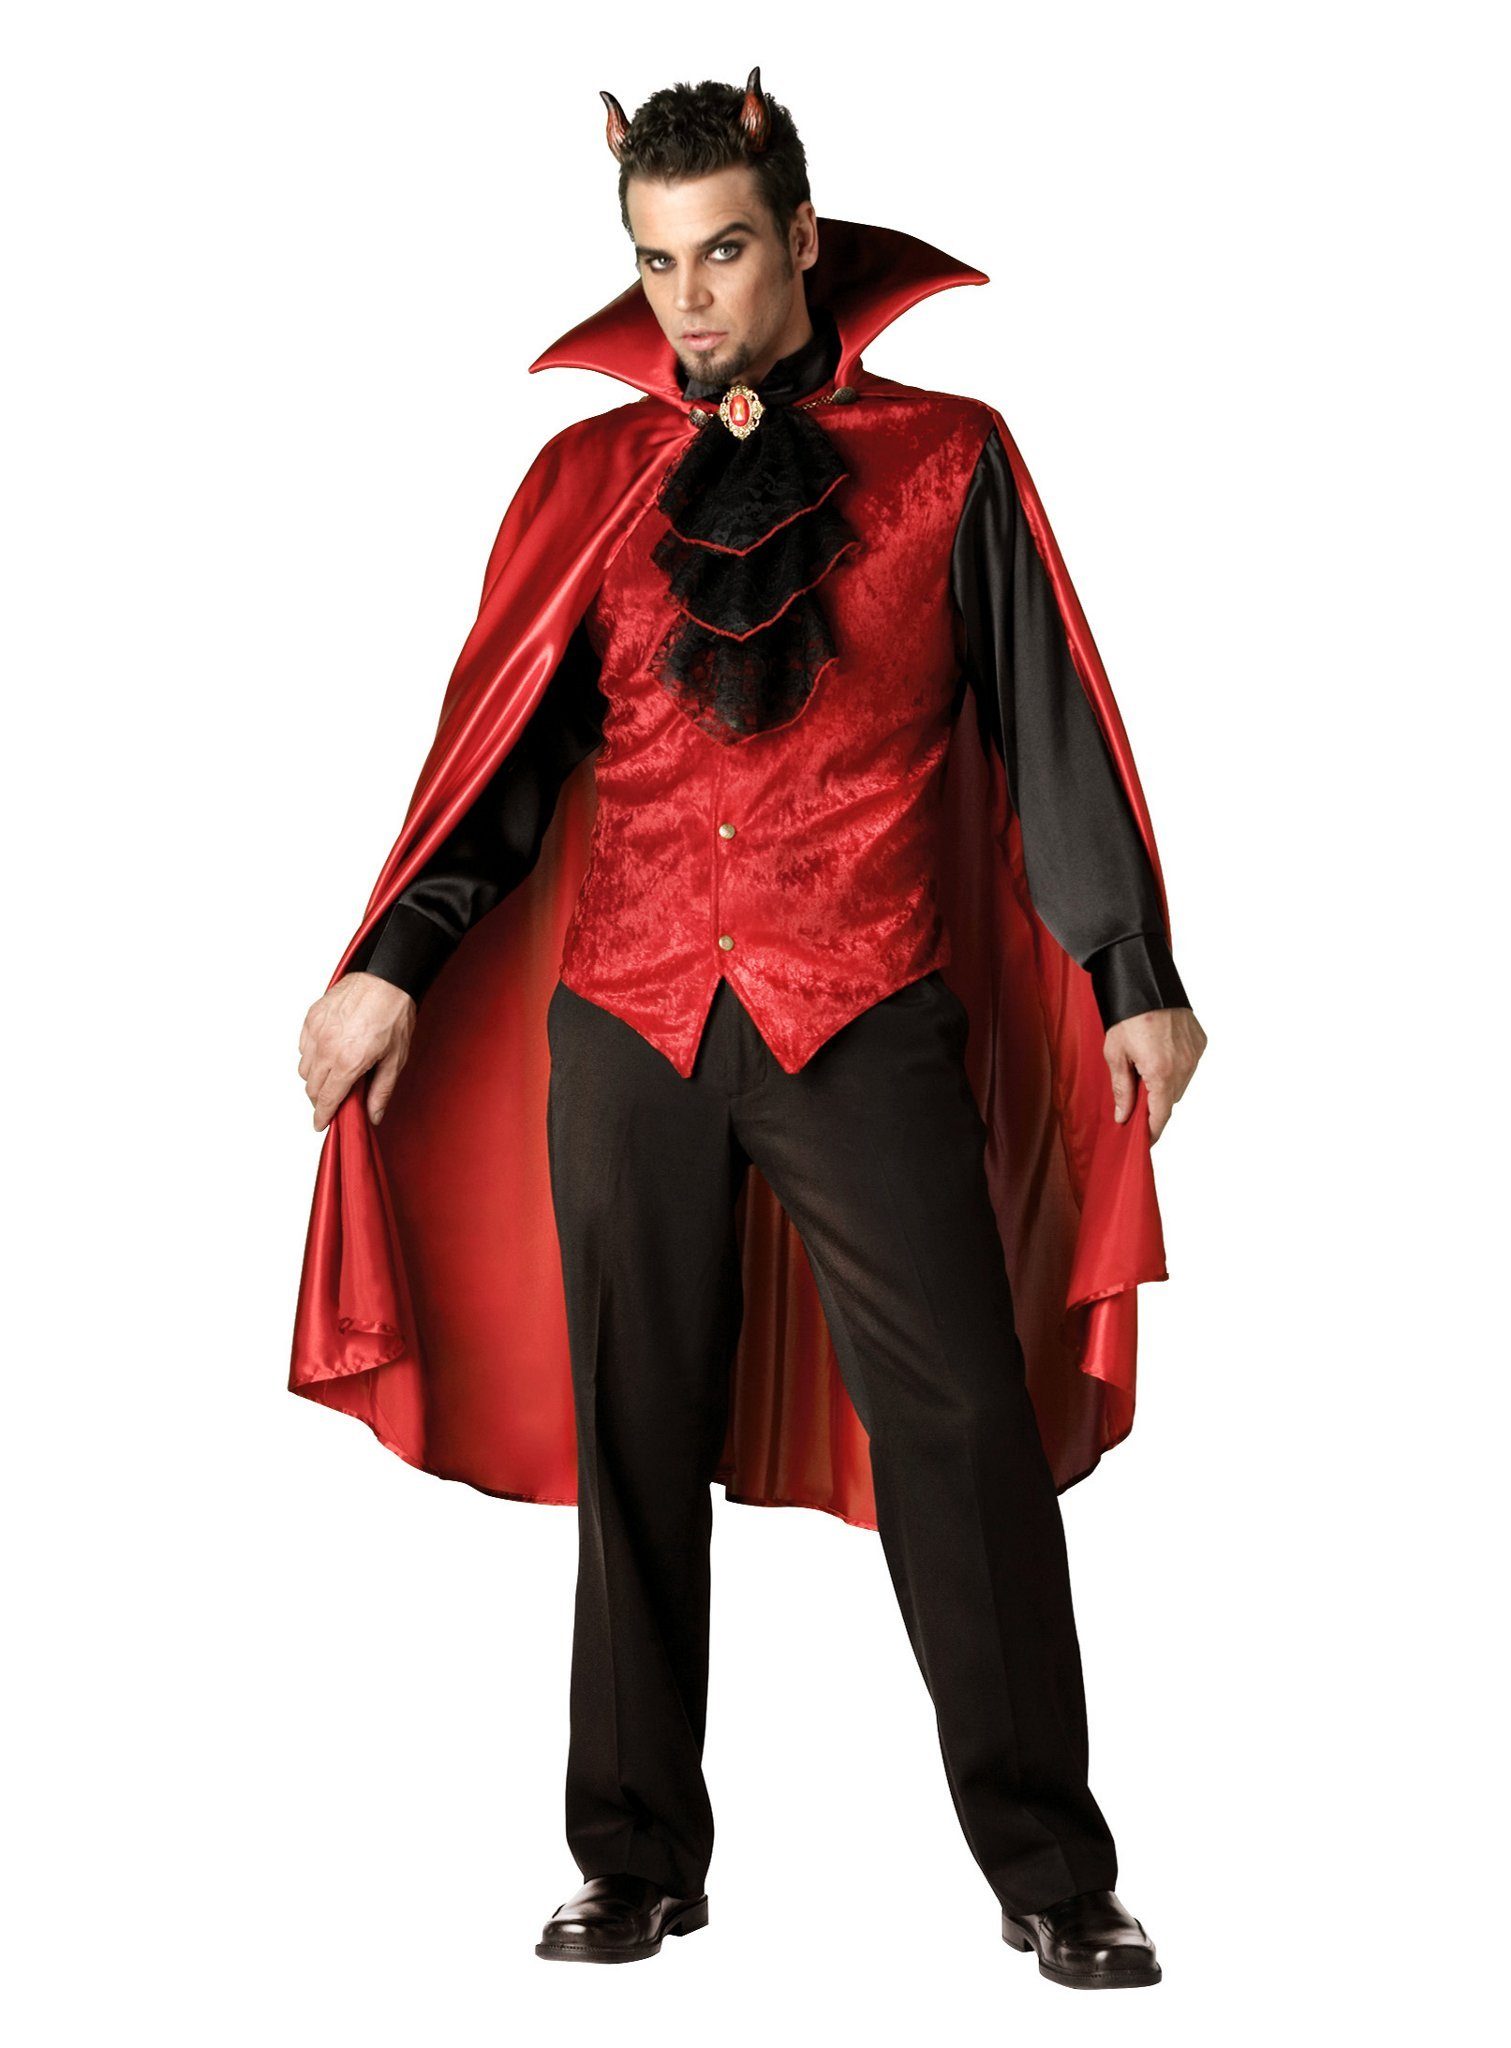 In Character Kostüm »Dämon«, Teuflisches Halloween-Kostüm für Männer